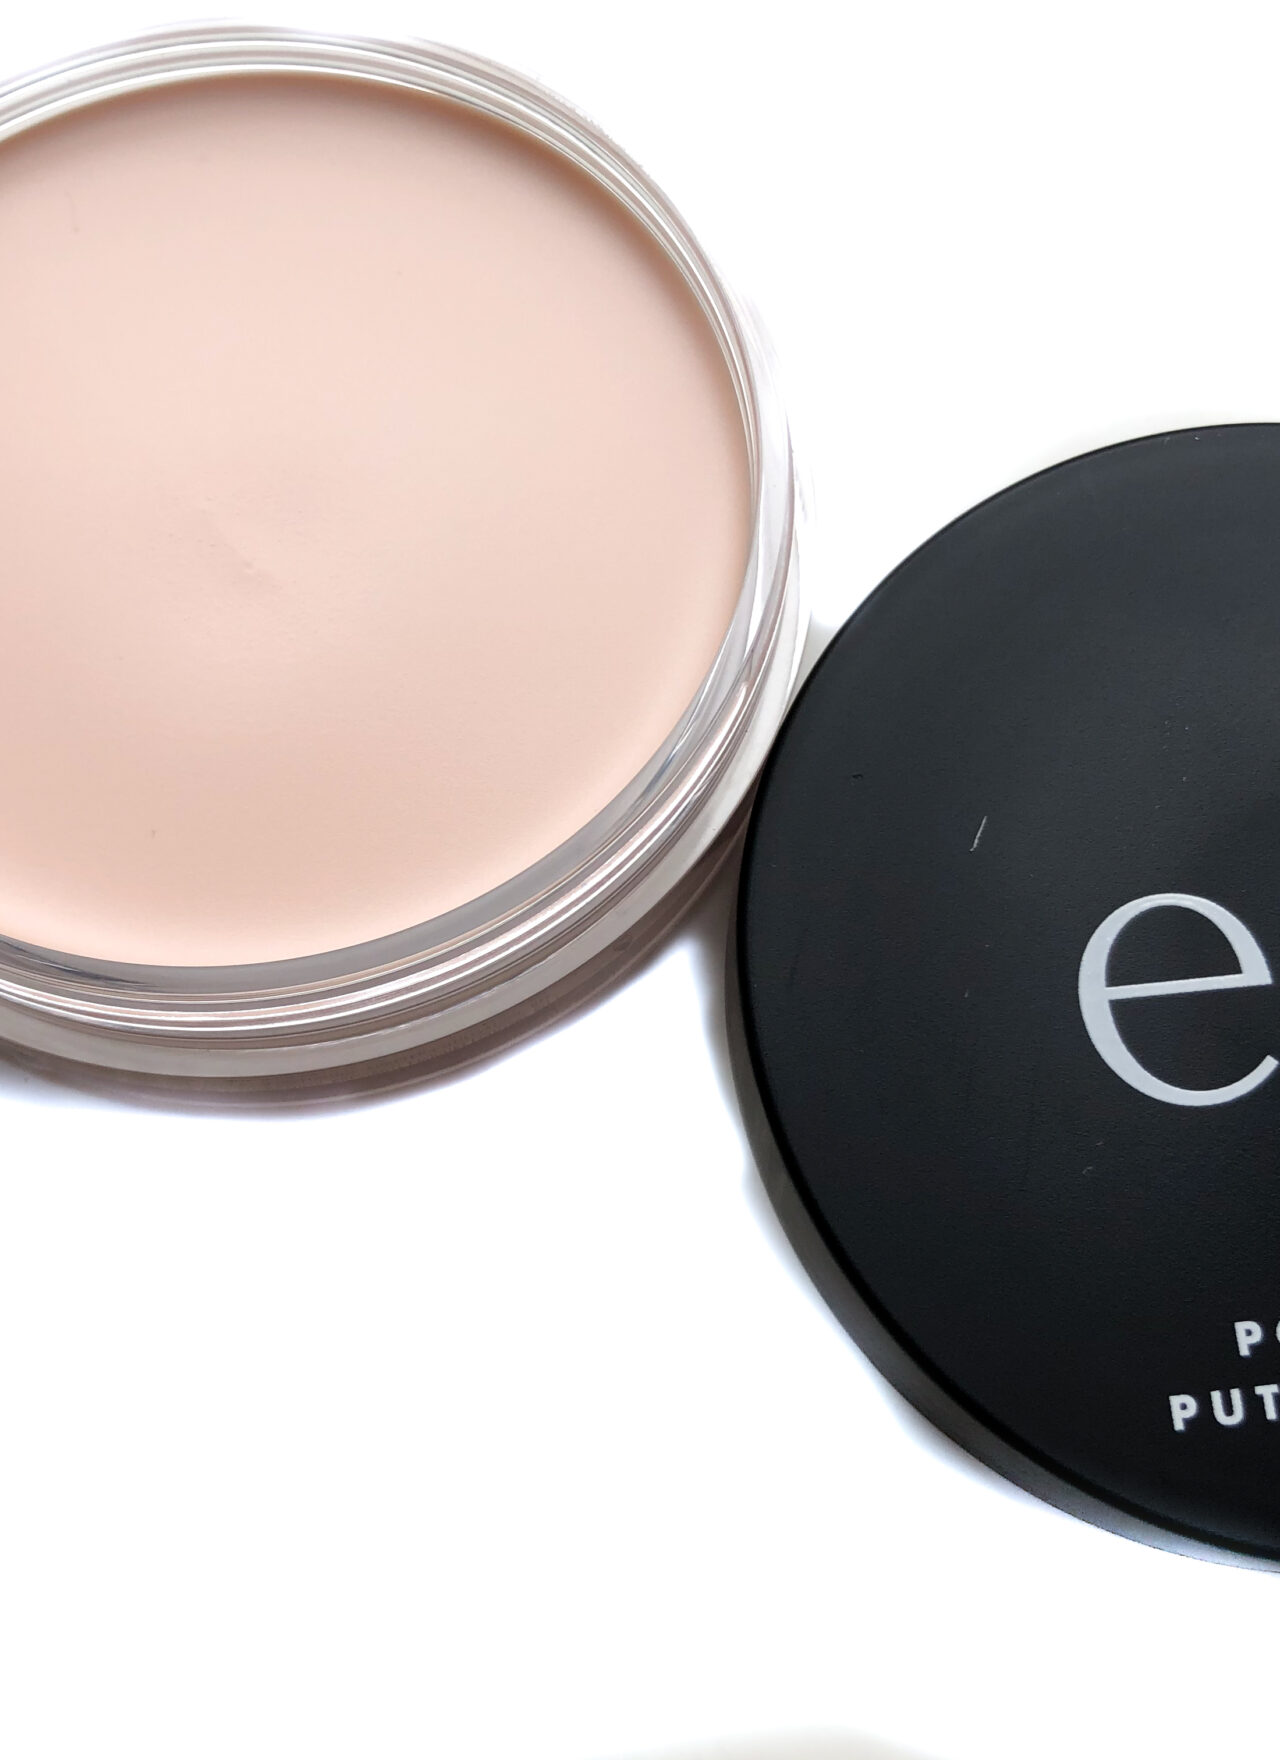 elf Cosmetics Poreless Putty Primer | Review